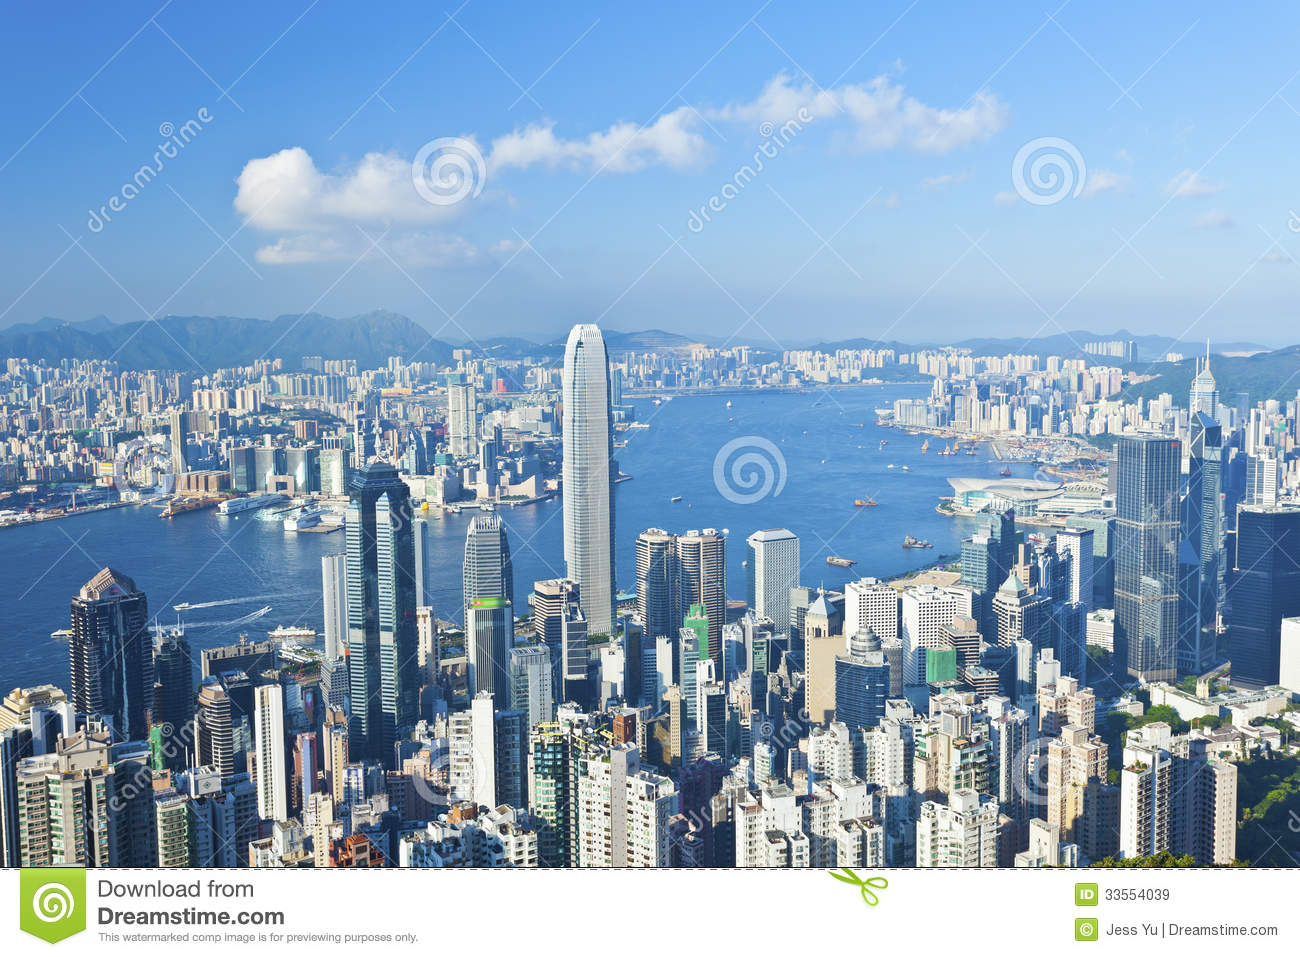 Hong Kong Day View Royalty Free Stock Images   Image  33554039